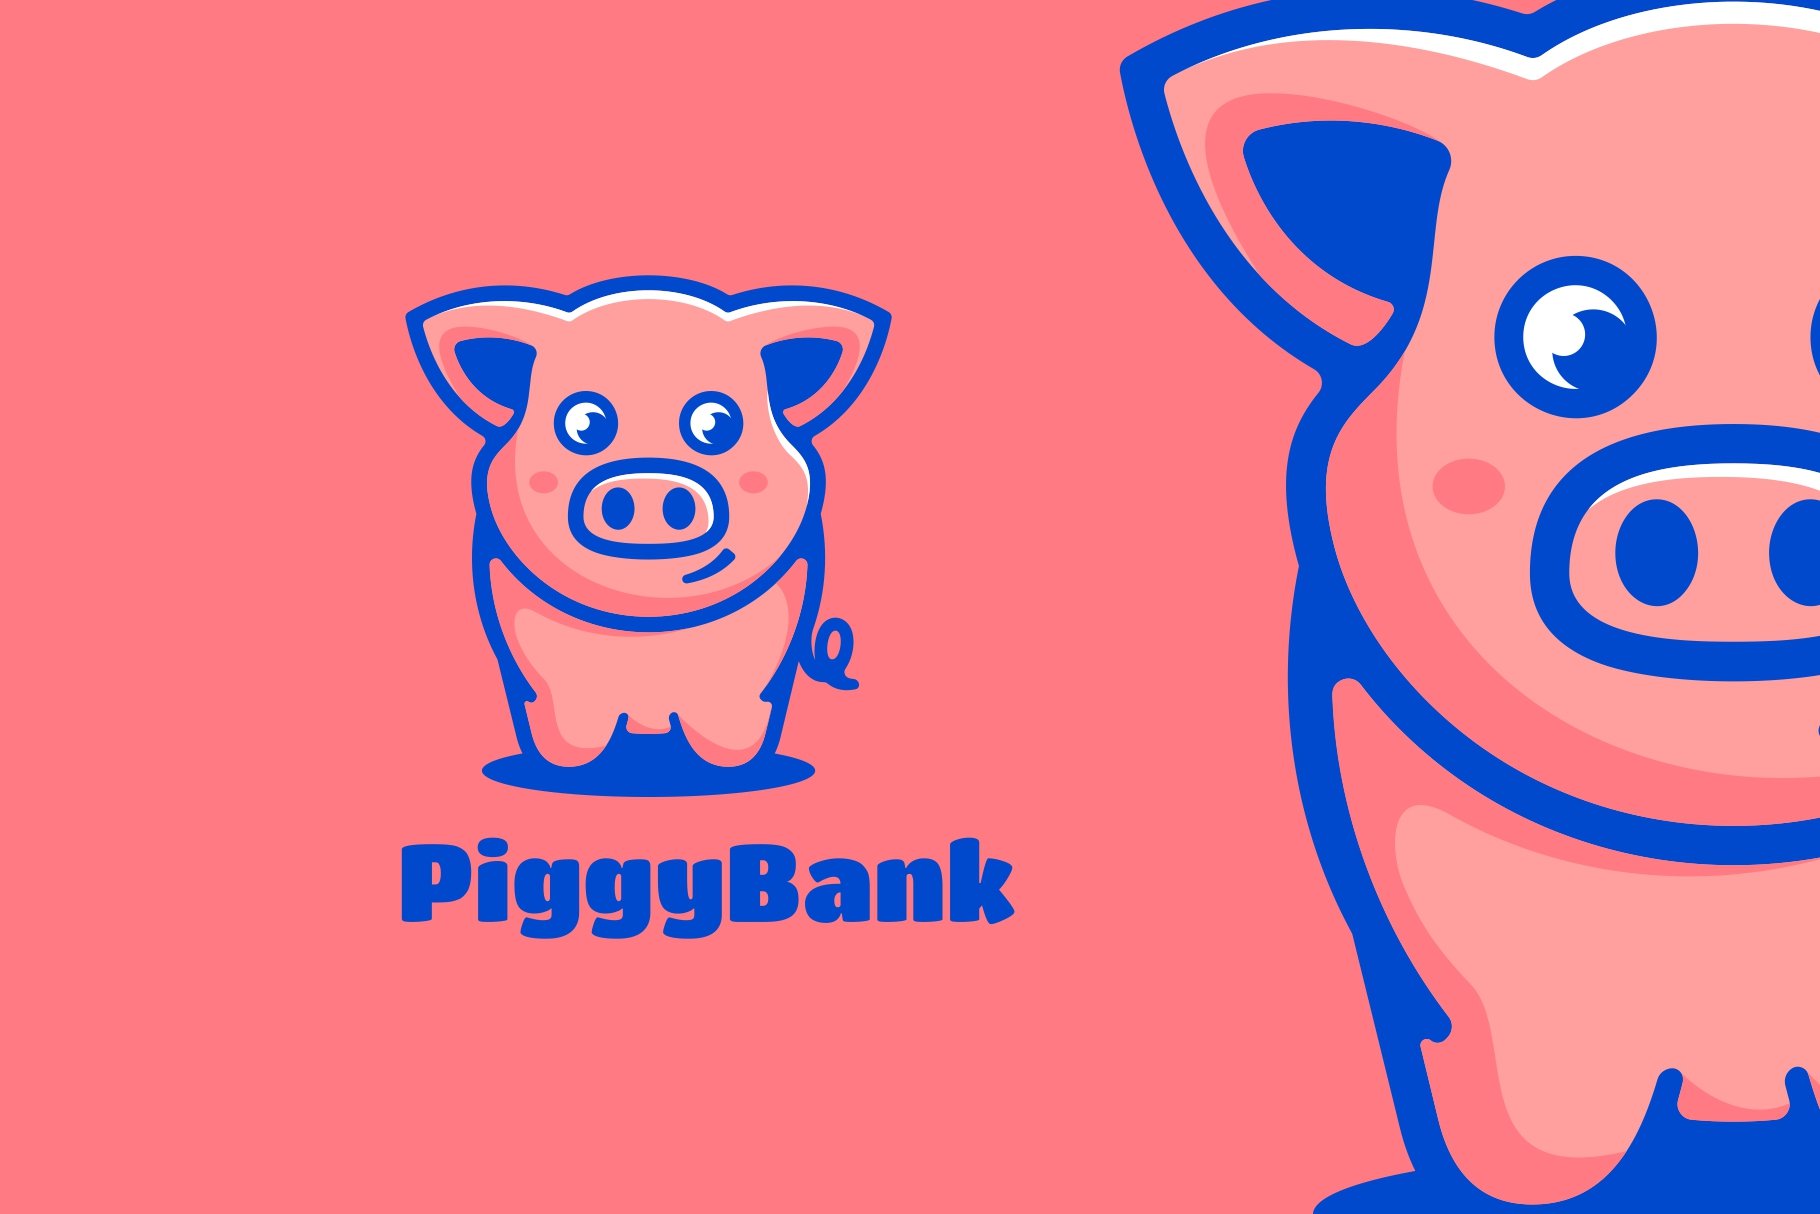 Pig Mascot Cartoon Logo cover image.